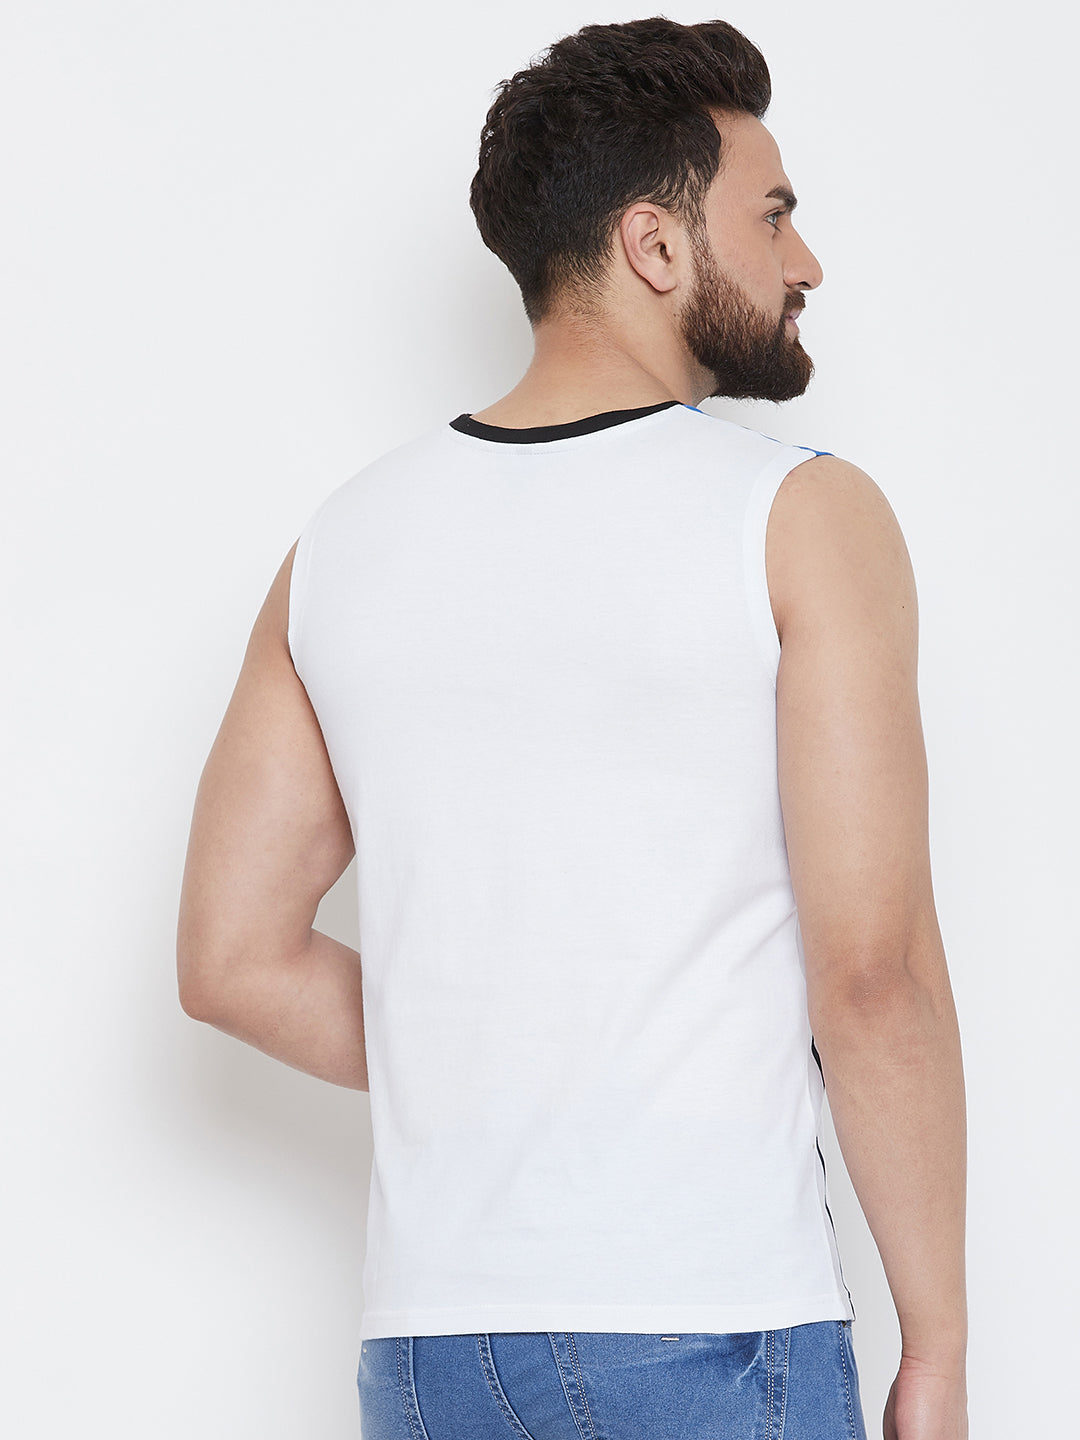 White Sleeveless Striper Round Neck T-shirt Vest